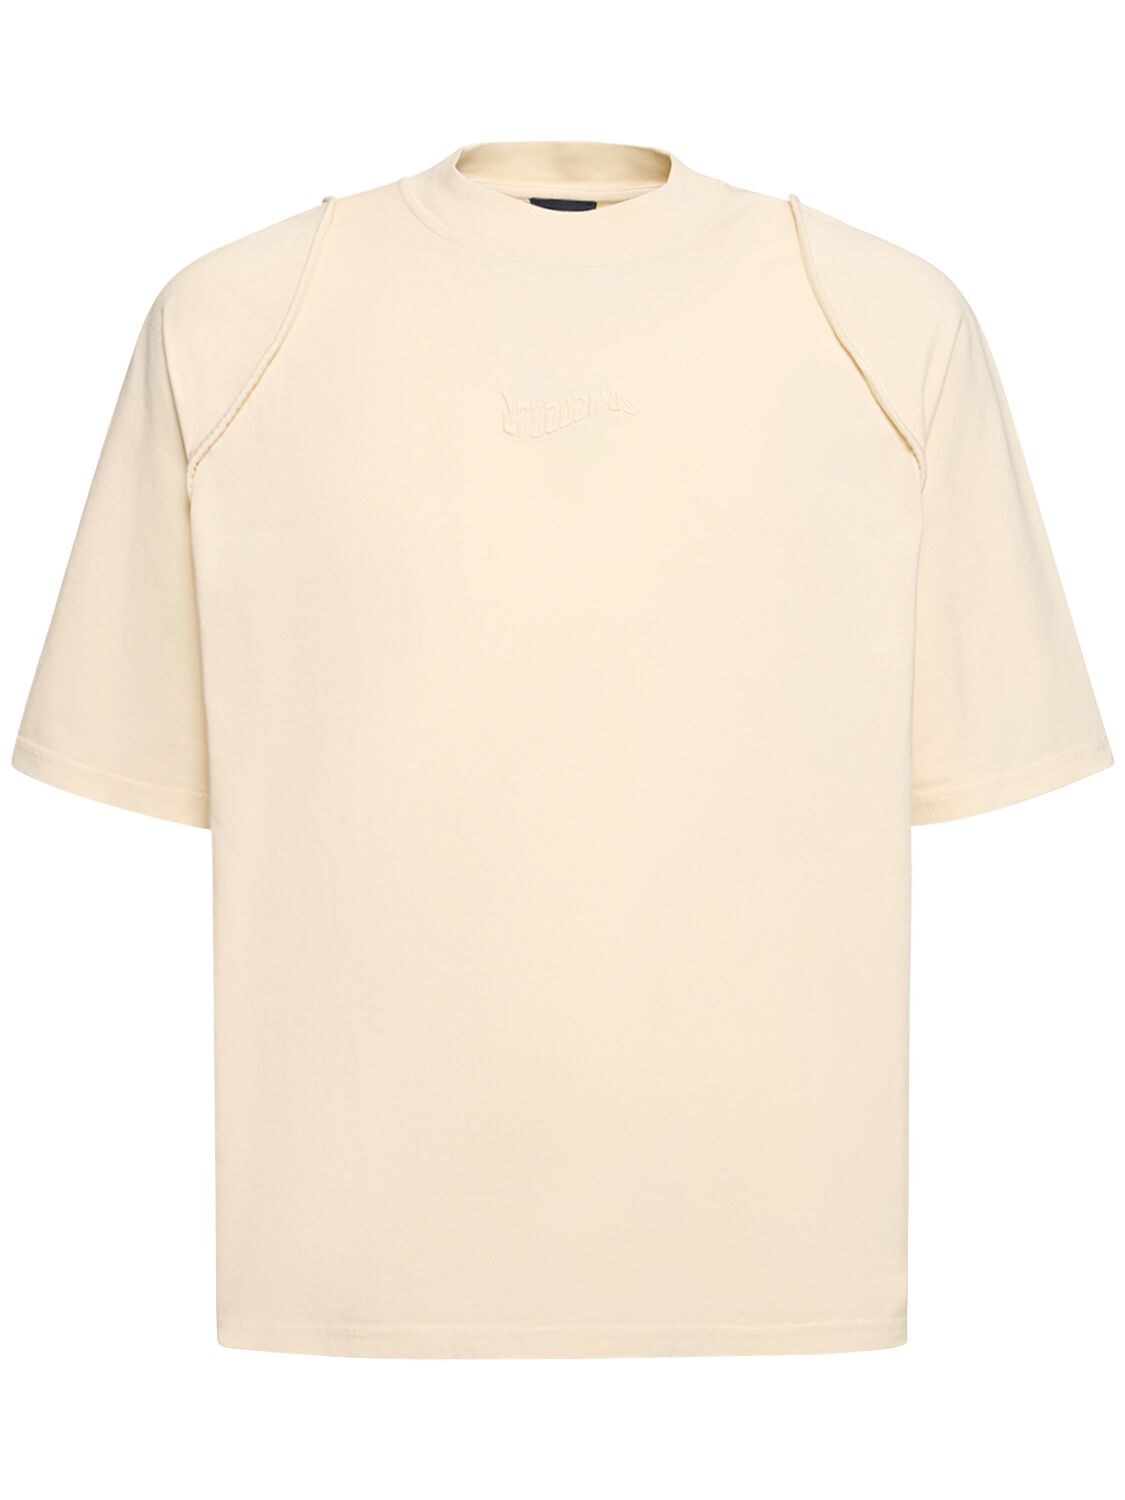 Jacquemus Le Tshirt Camargue Cotton  T-shirt In Light Beige